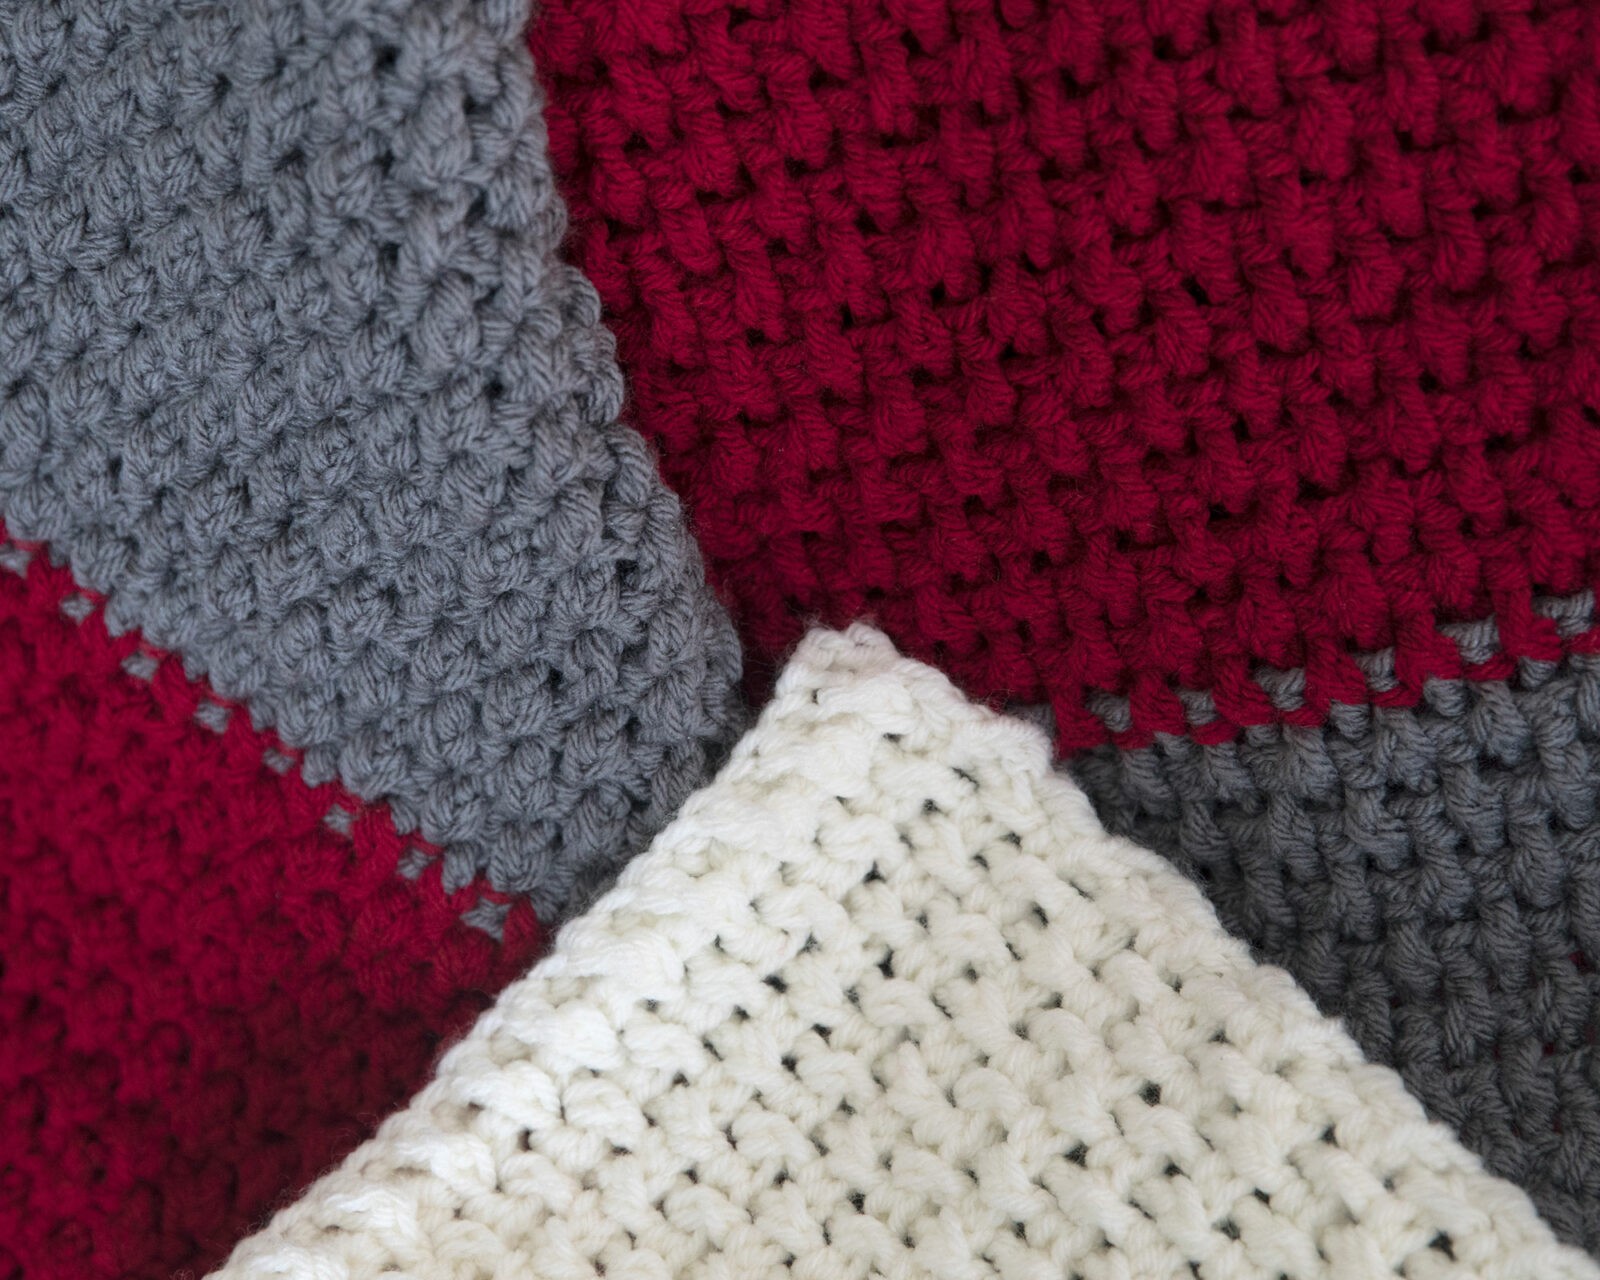 Free Crochet Blanket Pattern